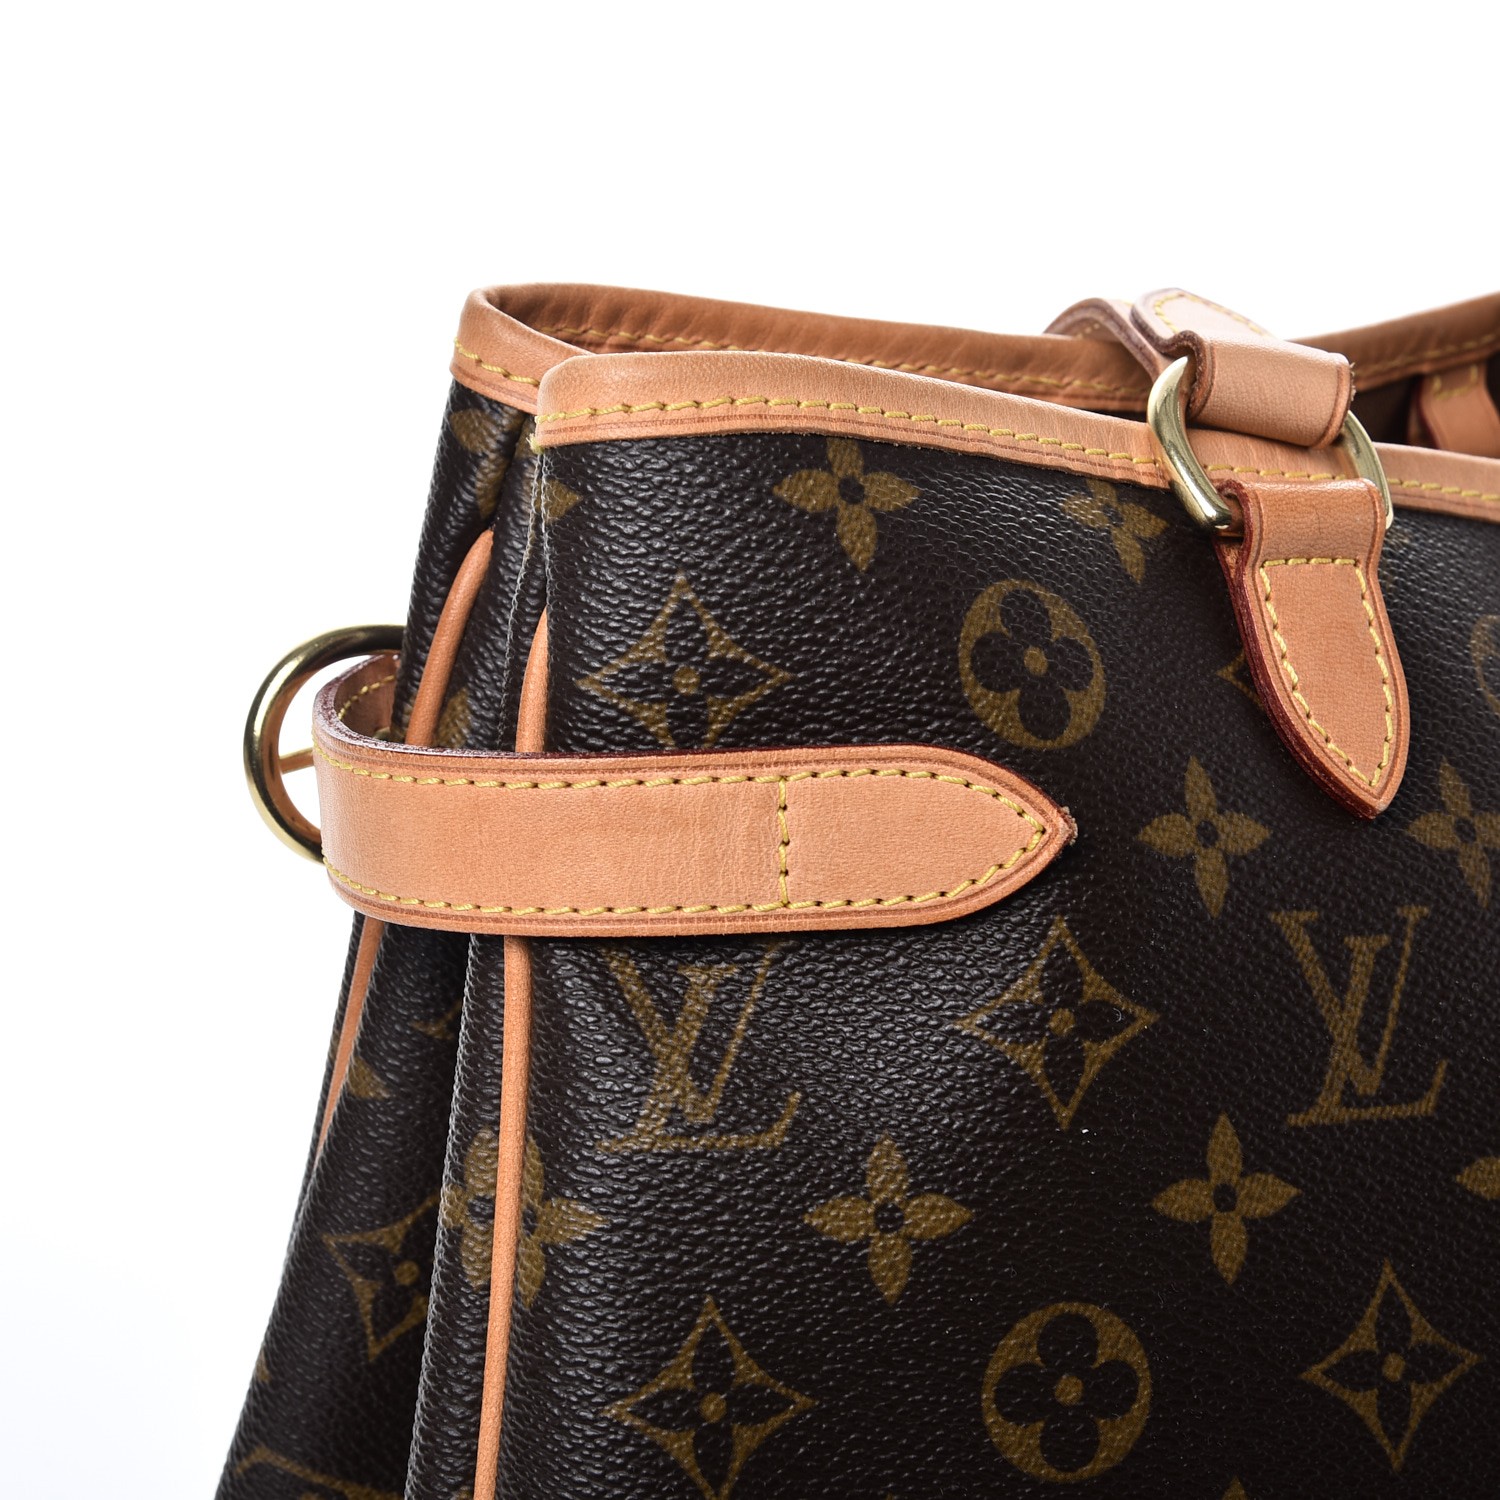 Louis-Vuitton-Monogram-Batignolles-Horizontal-Tote-Bag-M51154